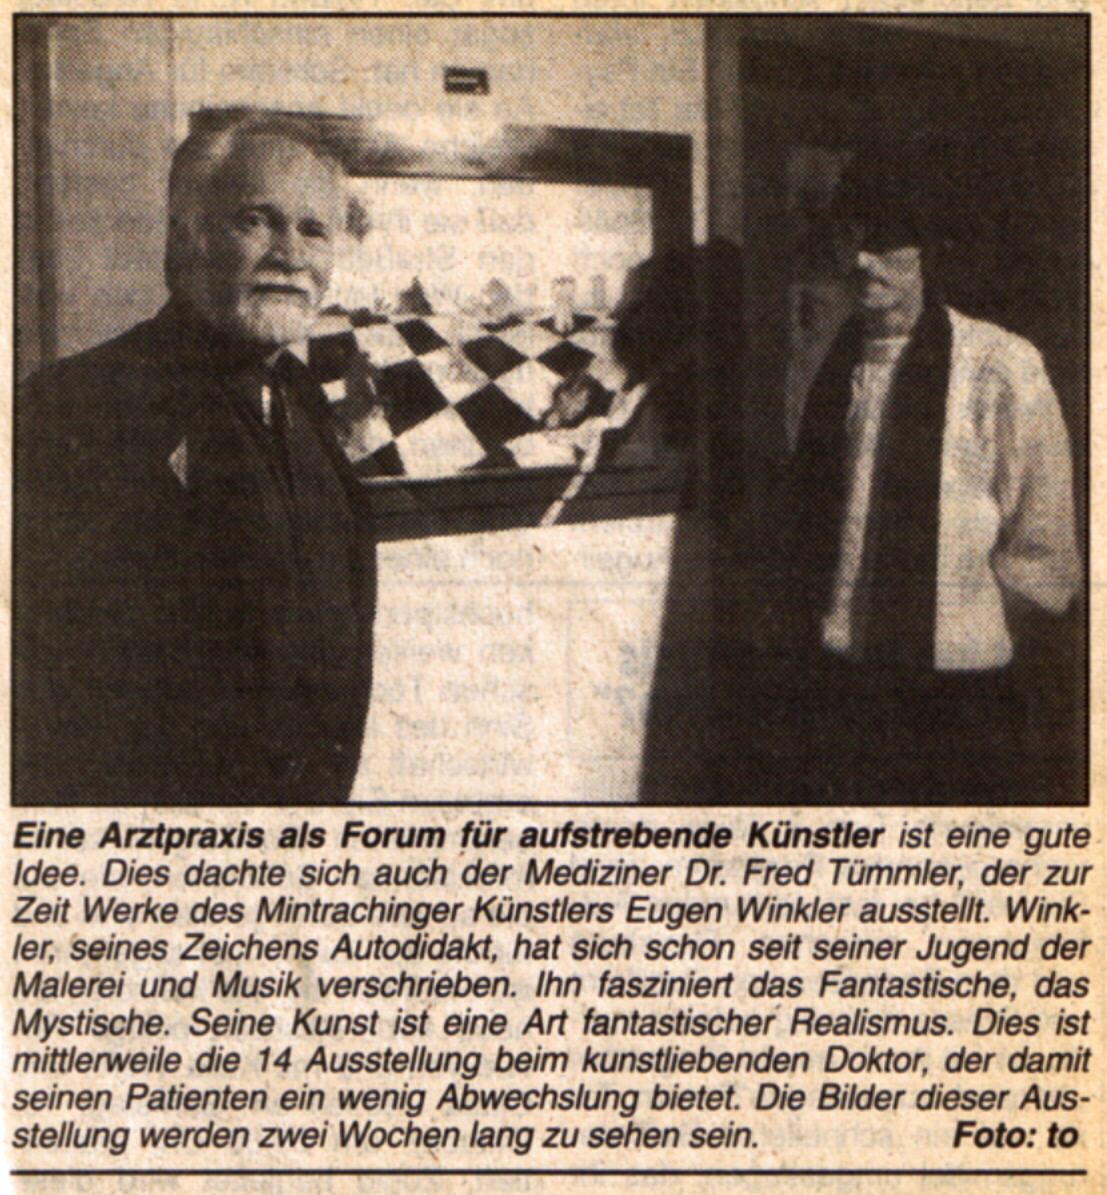 Dr. Fred Tmmler und Maler Eugen J. Winkler